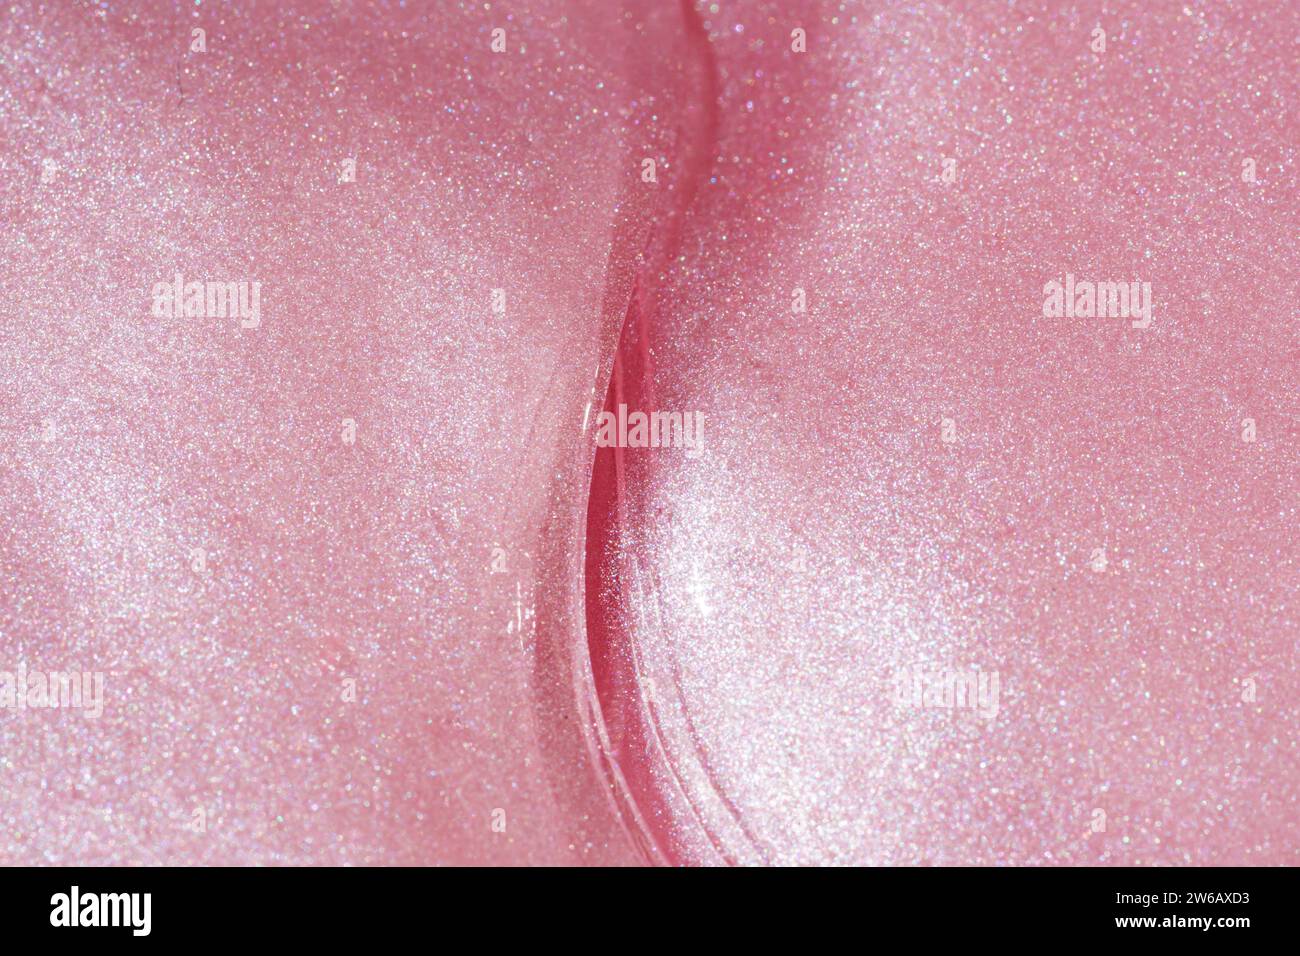 Dies ist ein Nahaufnahme-Bild, das die Details einer schimmernden rosafarbenen Oberfläche mit einer anmutigen Kurve zeigt, die ein abstraktes Design schafft. Stockfoto